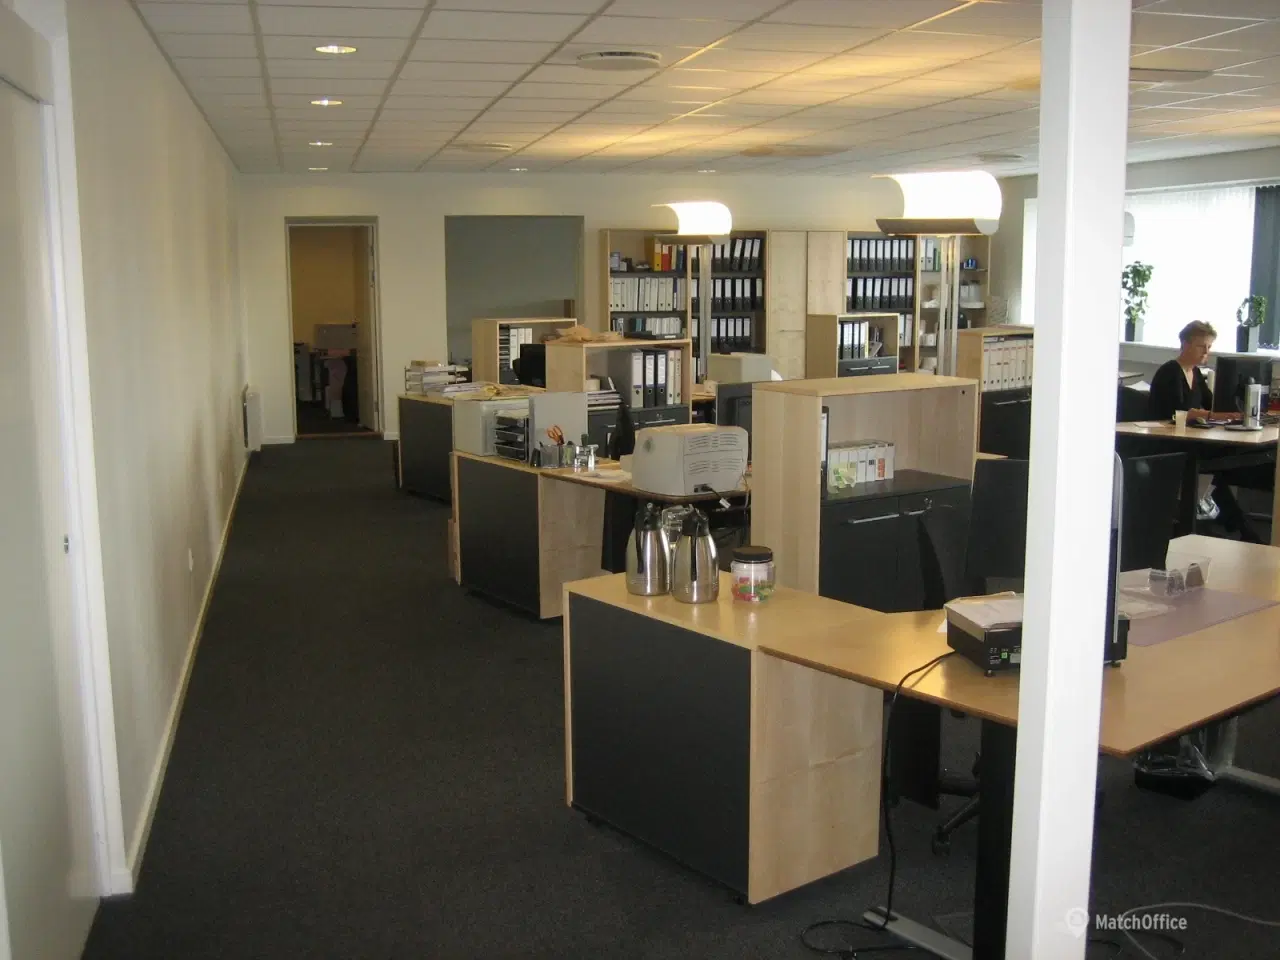 Billede 8 - Nyrenoverede kontorlokaler og logistik-/produktionshaller med god loftshøjde